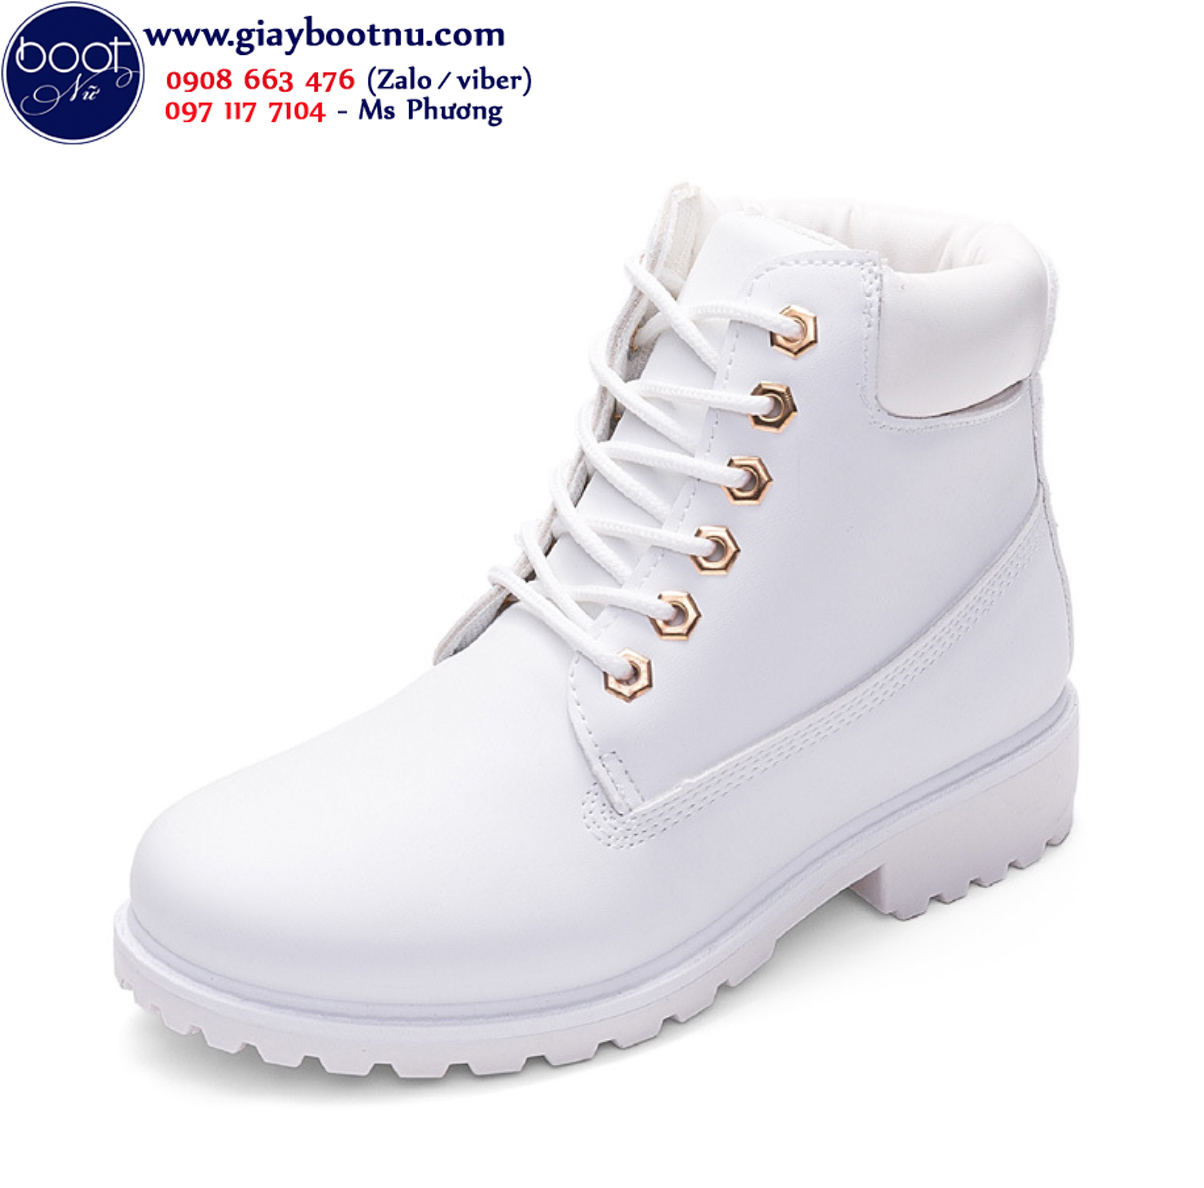 Boot trắng đế trệt cột dây GBN18503 màu trắng trẻ trung